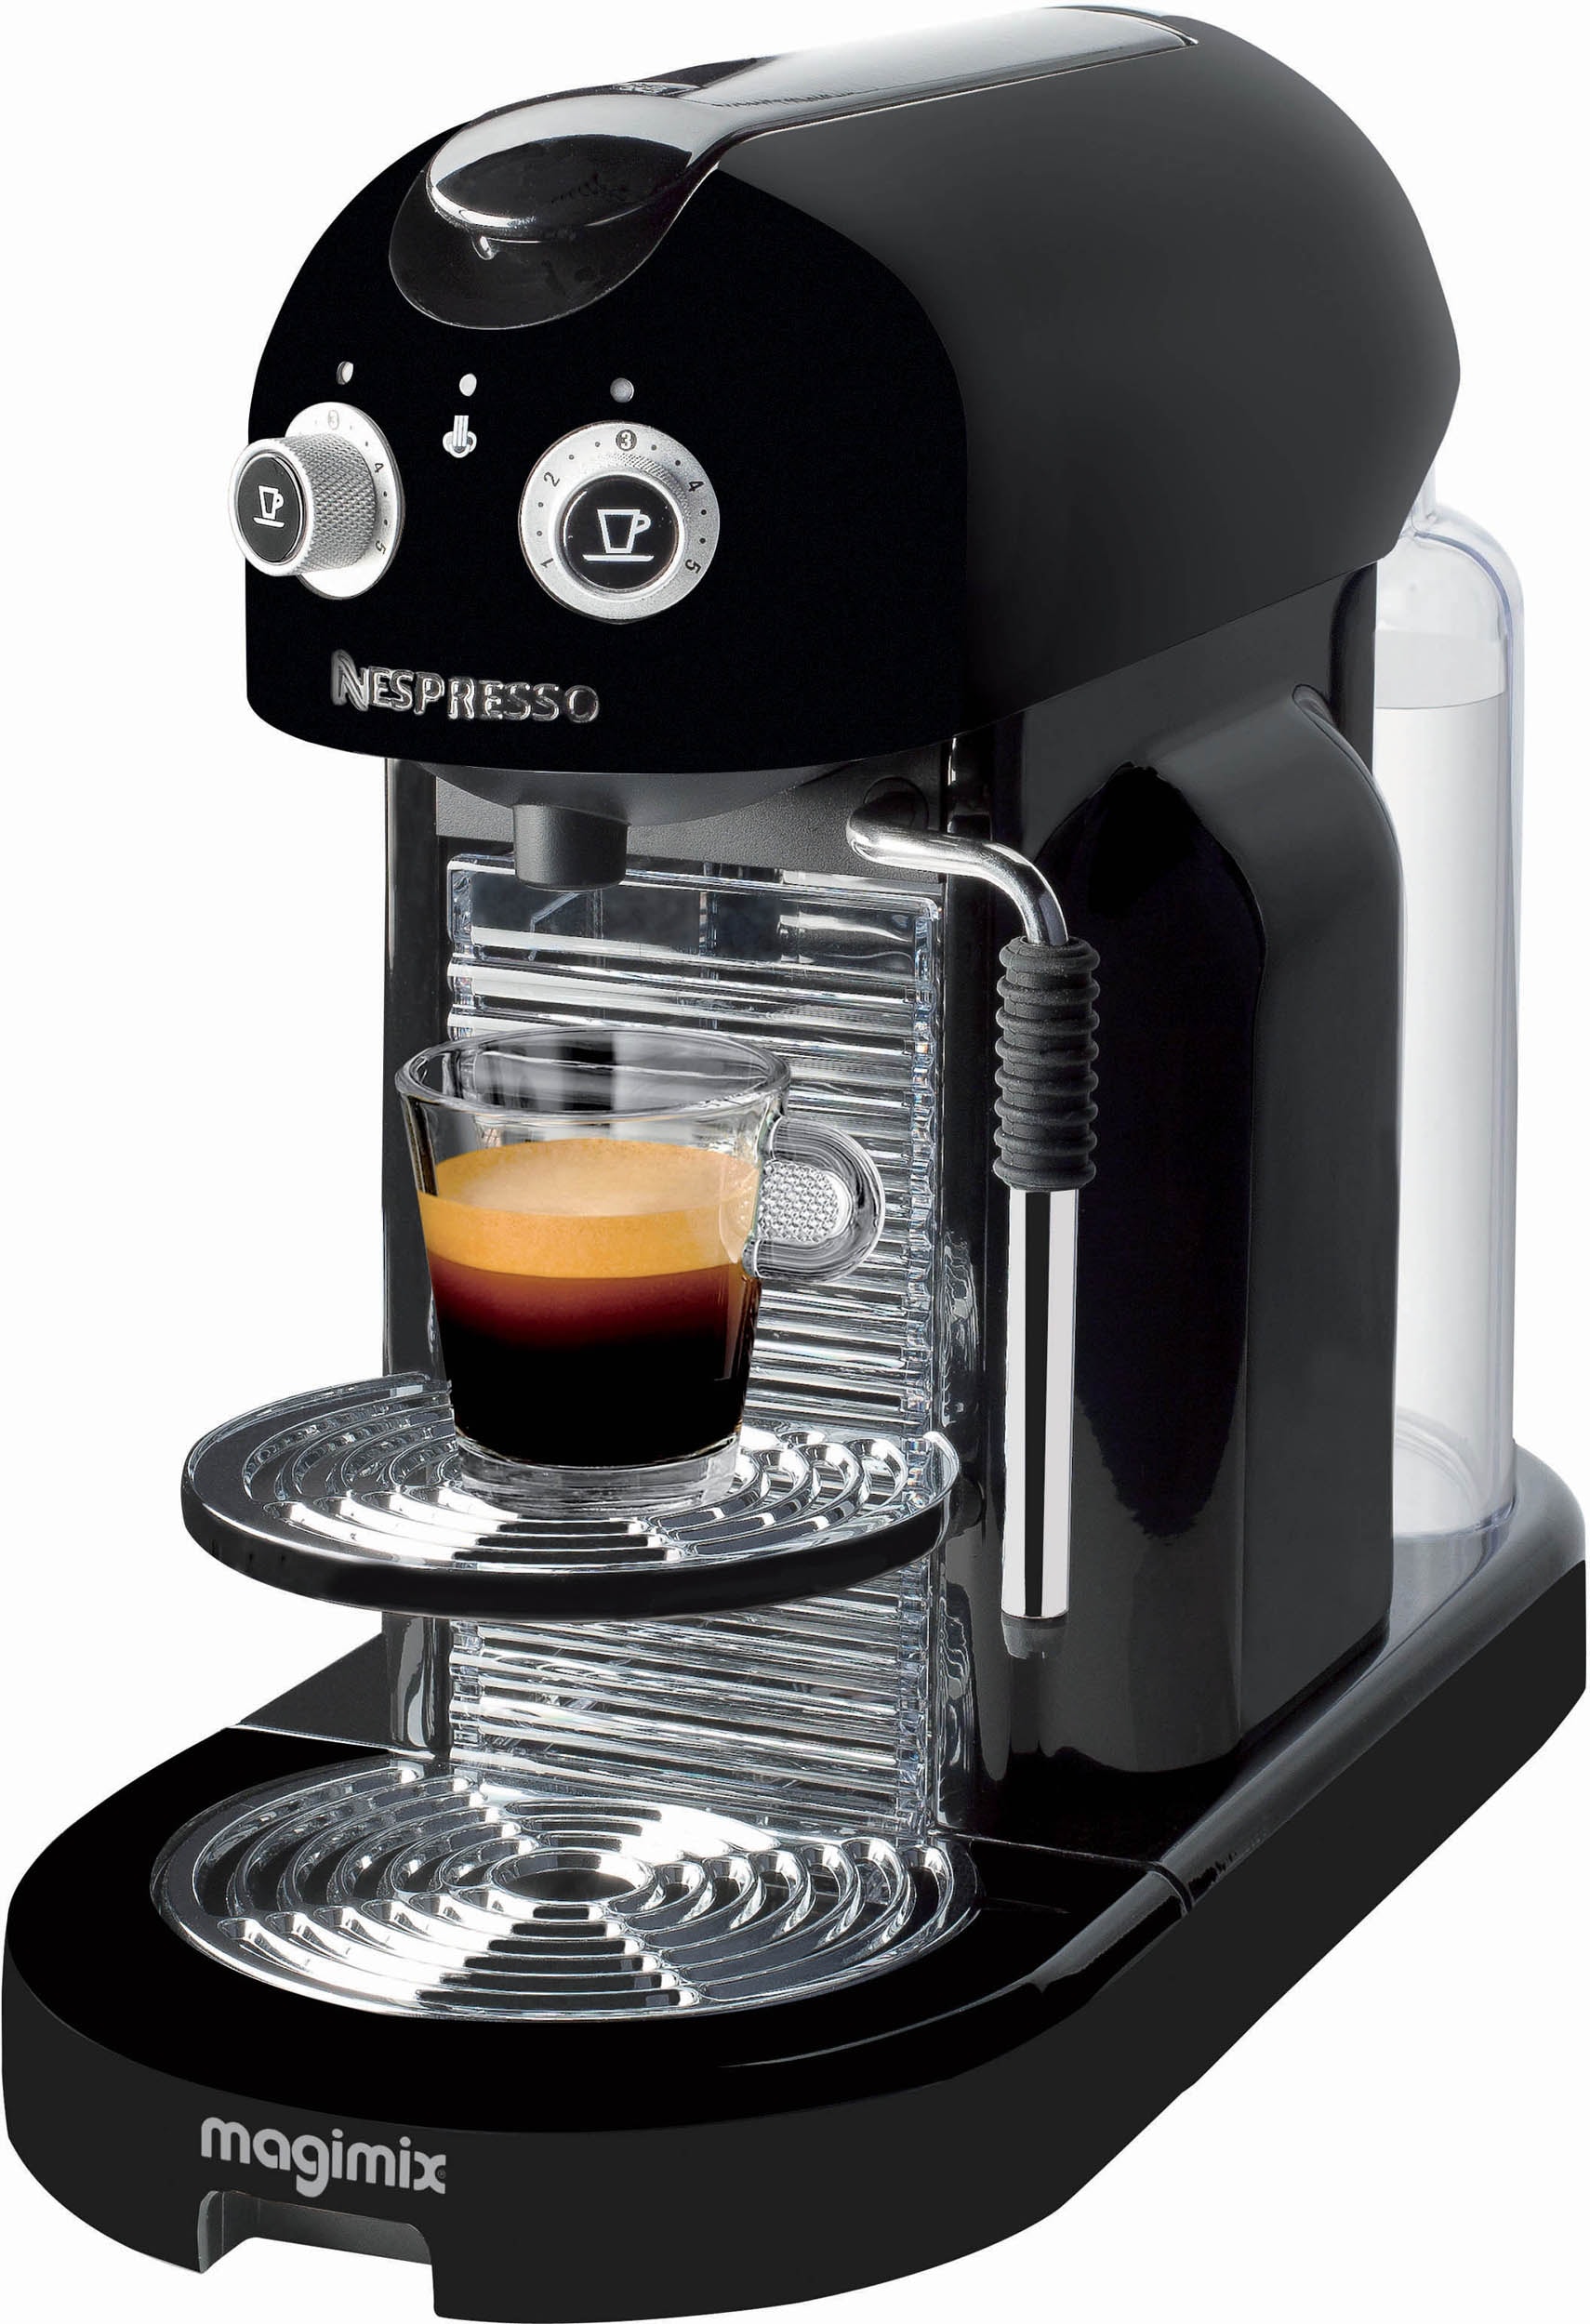 Nespresso M400 Gran Maestria argent automatique Magimix - 11335